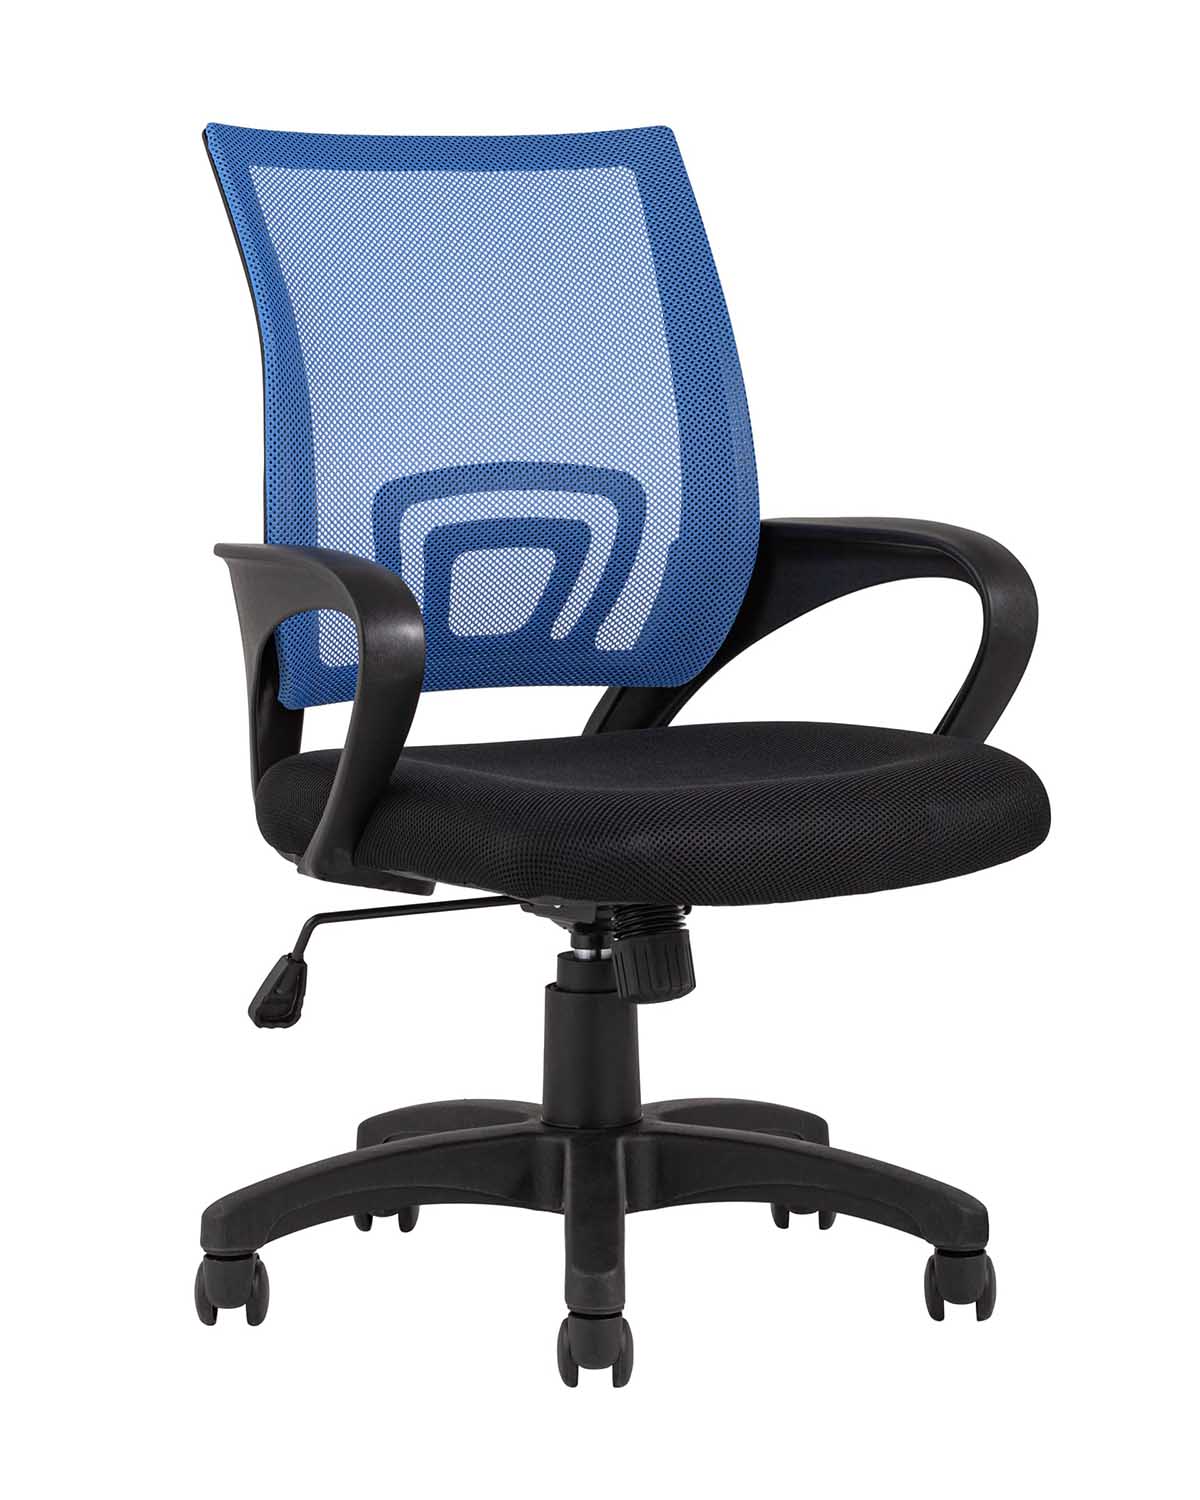 Компьютерное кресло TopChairs Simple офисное синее в обивке из текстиля с сеткой, механизм качания Top Gun